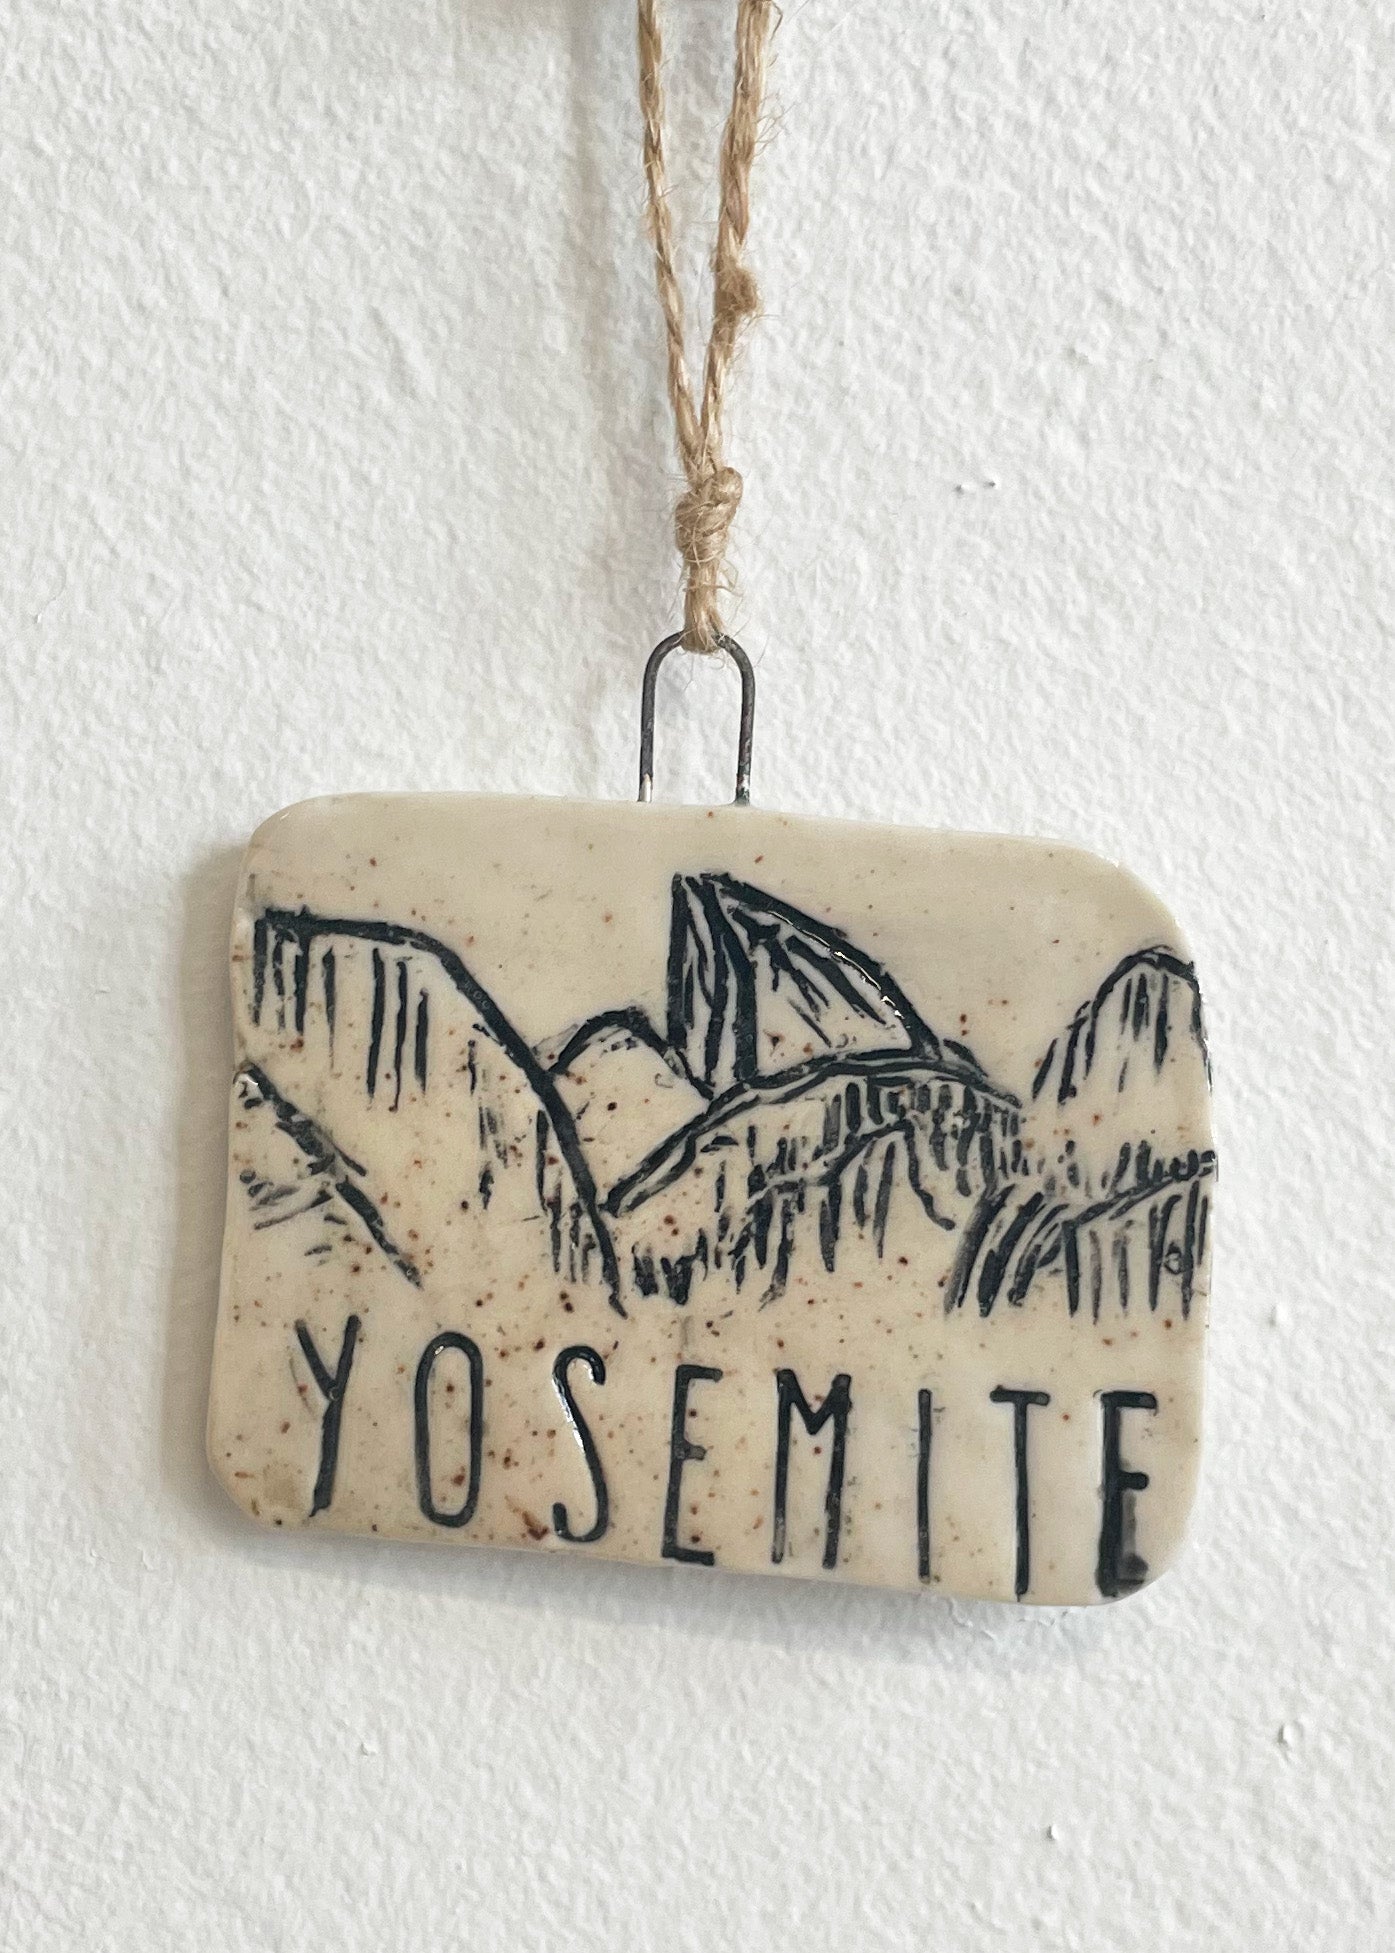 Yosemite Tunnel View Ornament, No 5